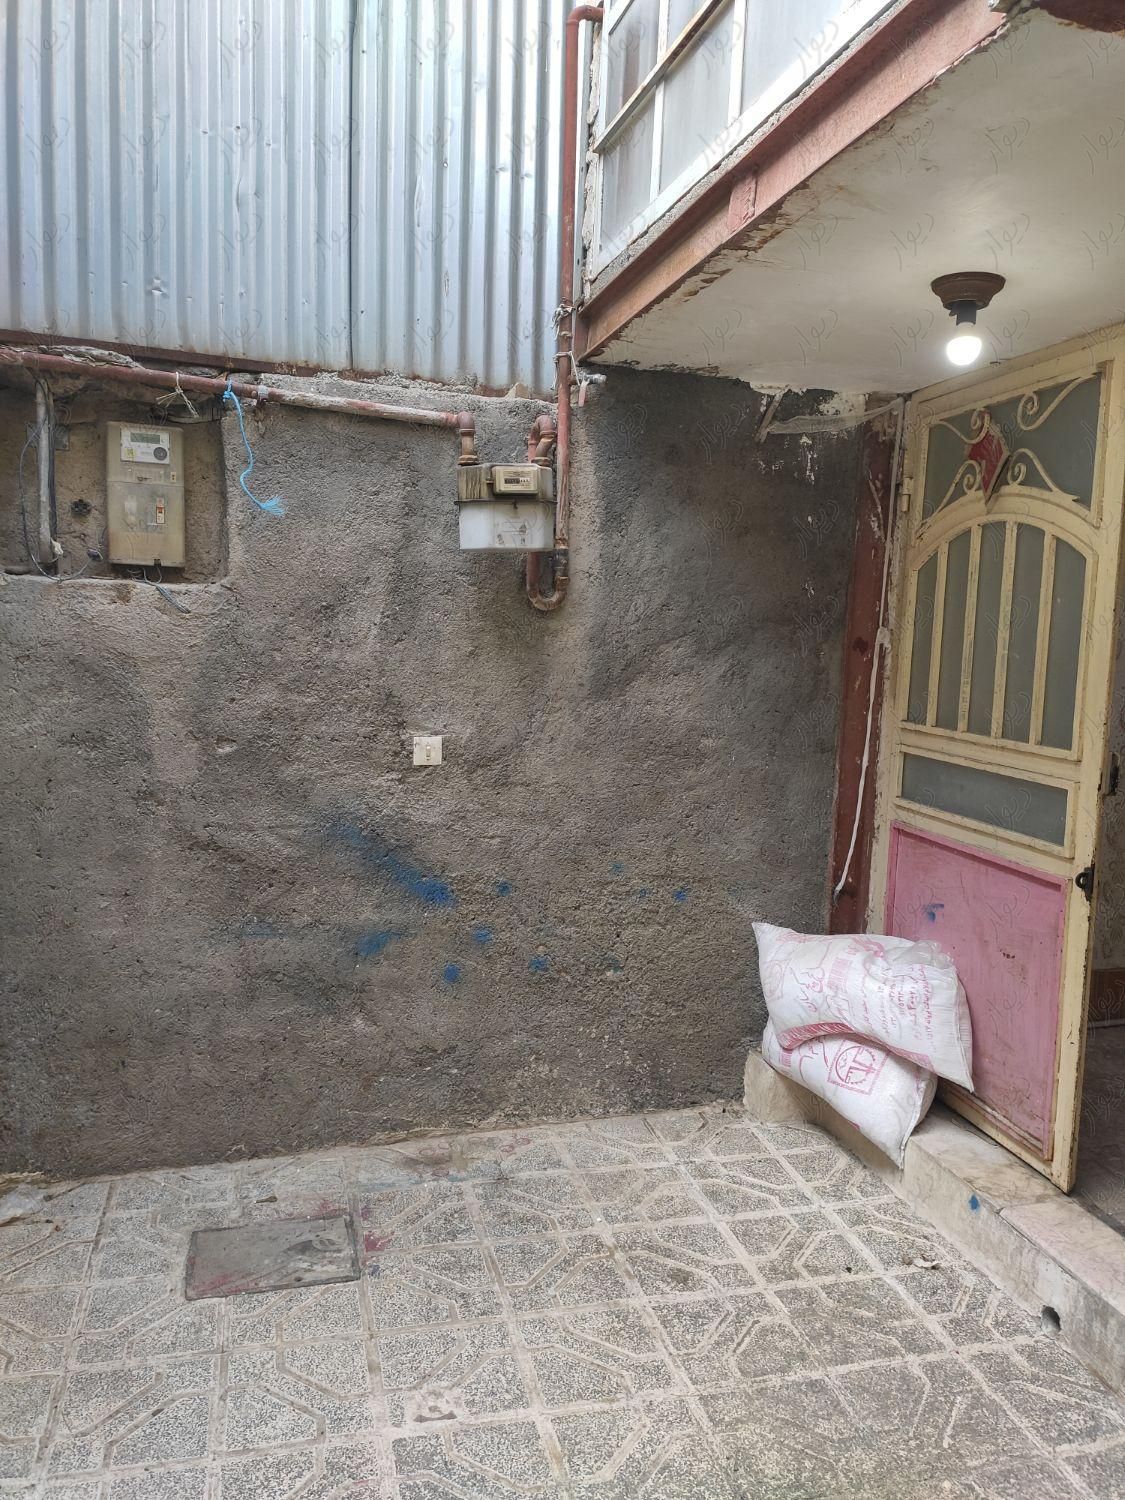 ویلایی ۸۰ متر با قولنامه هولو گرام دار|فروش خانه و ویلا|مشهد, شهید آوینی|دیوار